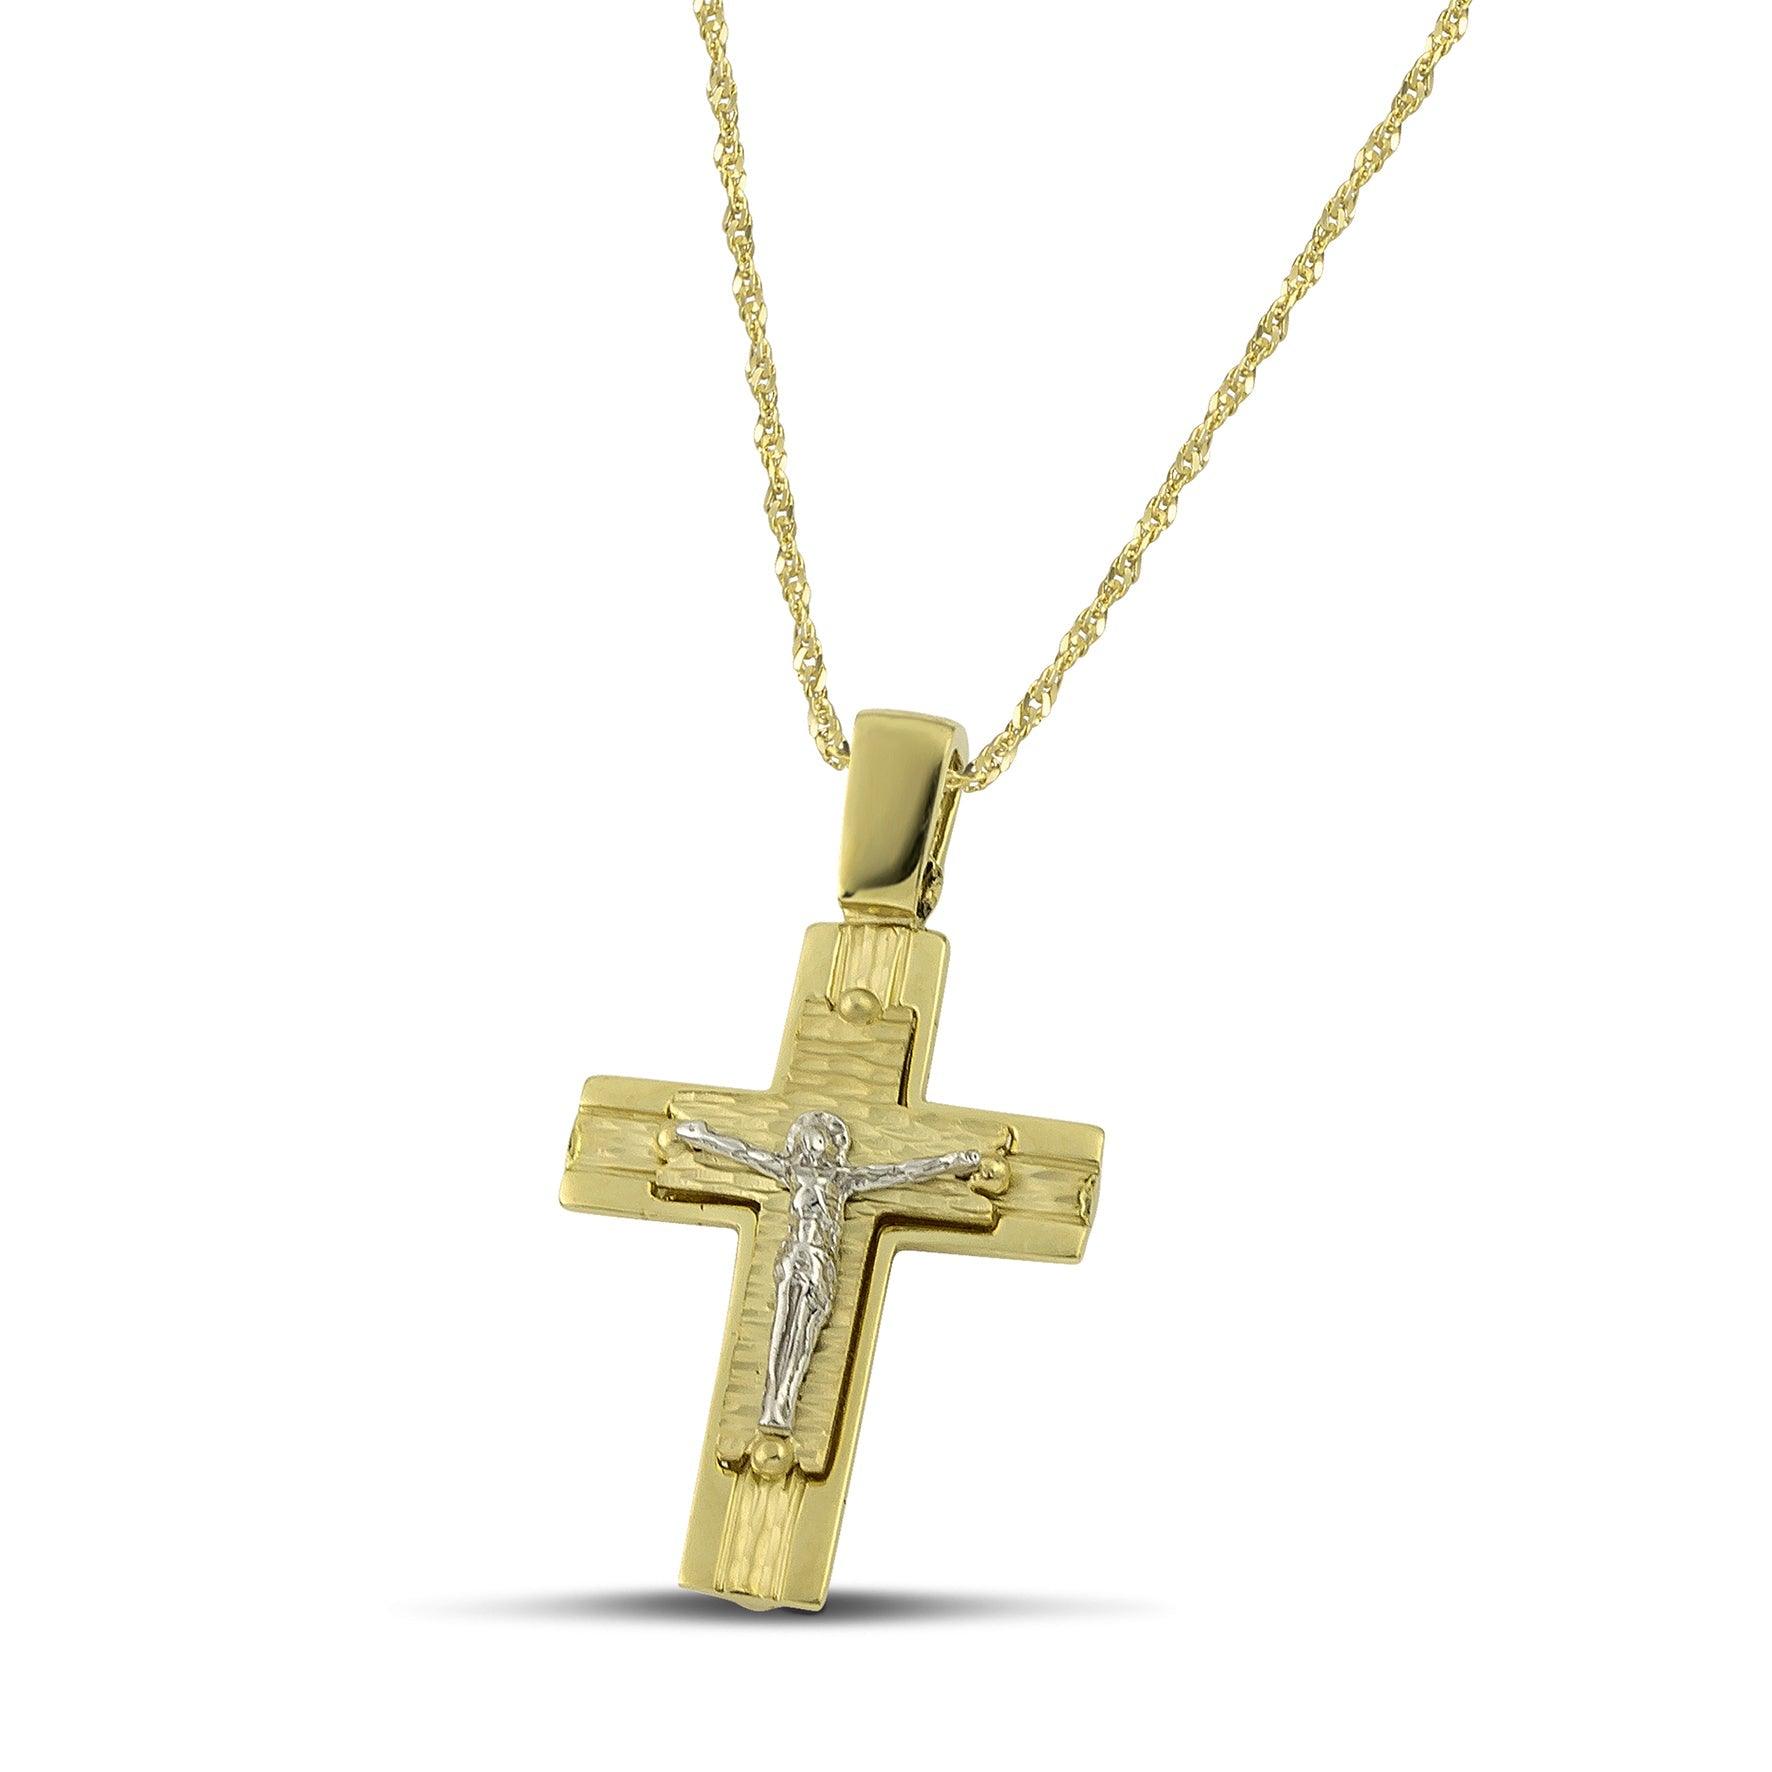 Ανδρικός βαπτιστικός σταυρός από χρυσό Κ14 διπλής όψης, φορεμένος σε λεπτή, στριφτή αλυσίδα. 